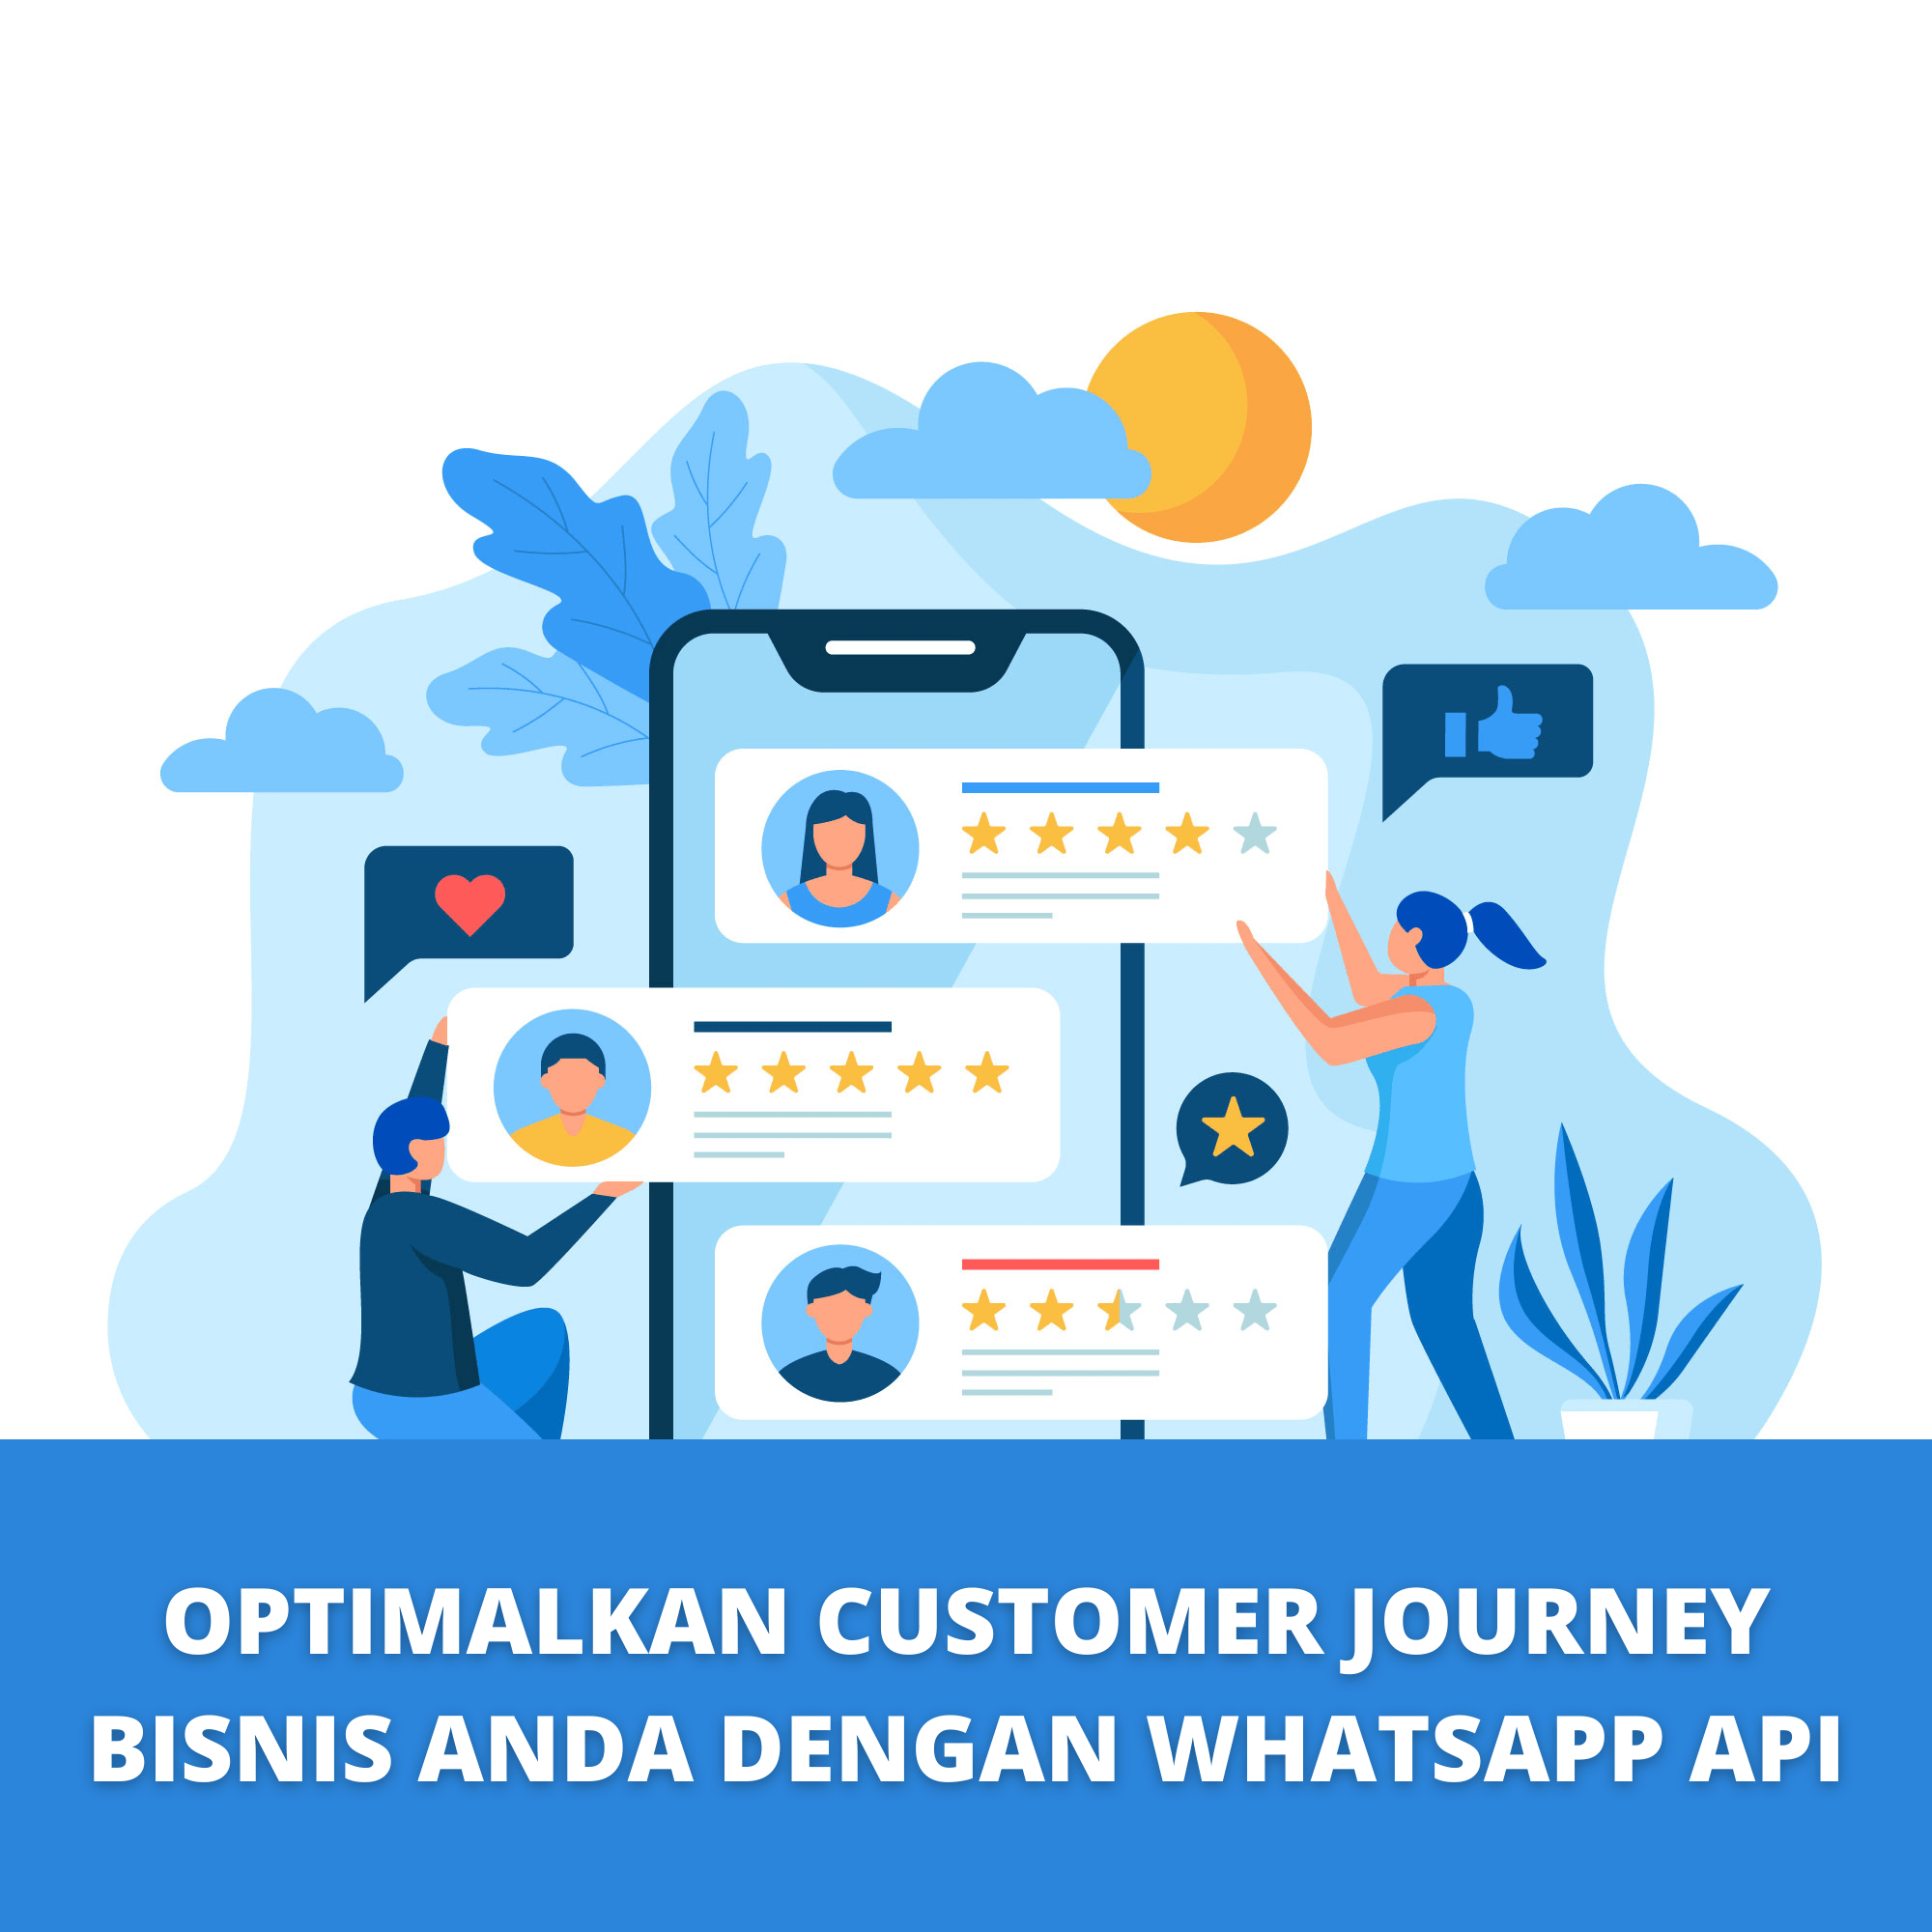 Optimalkan Customer Journey Bisnis Anda dengan WhatsApp API